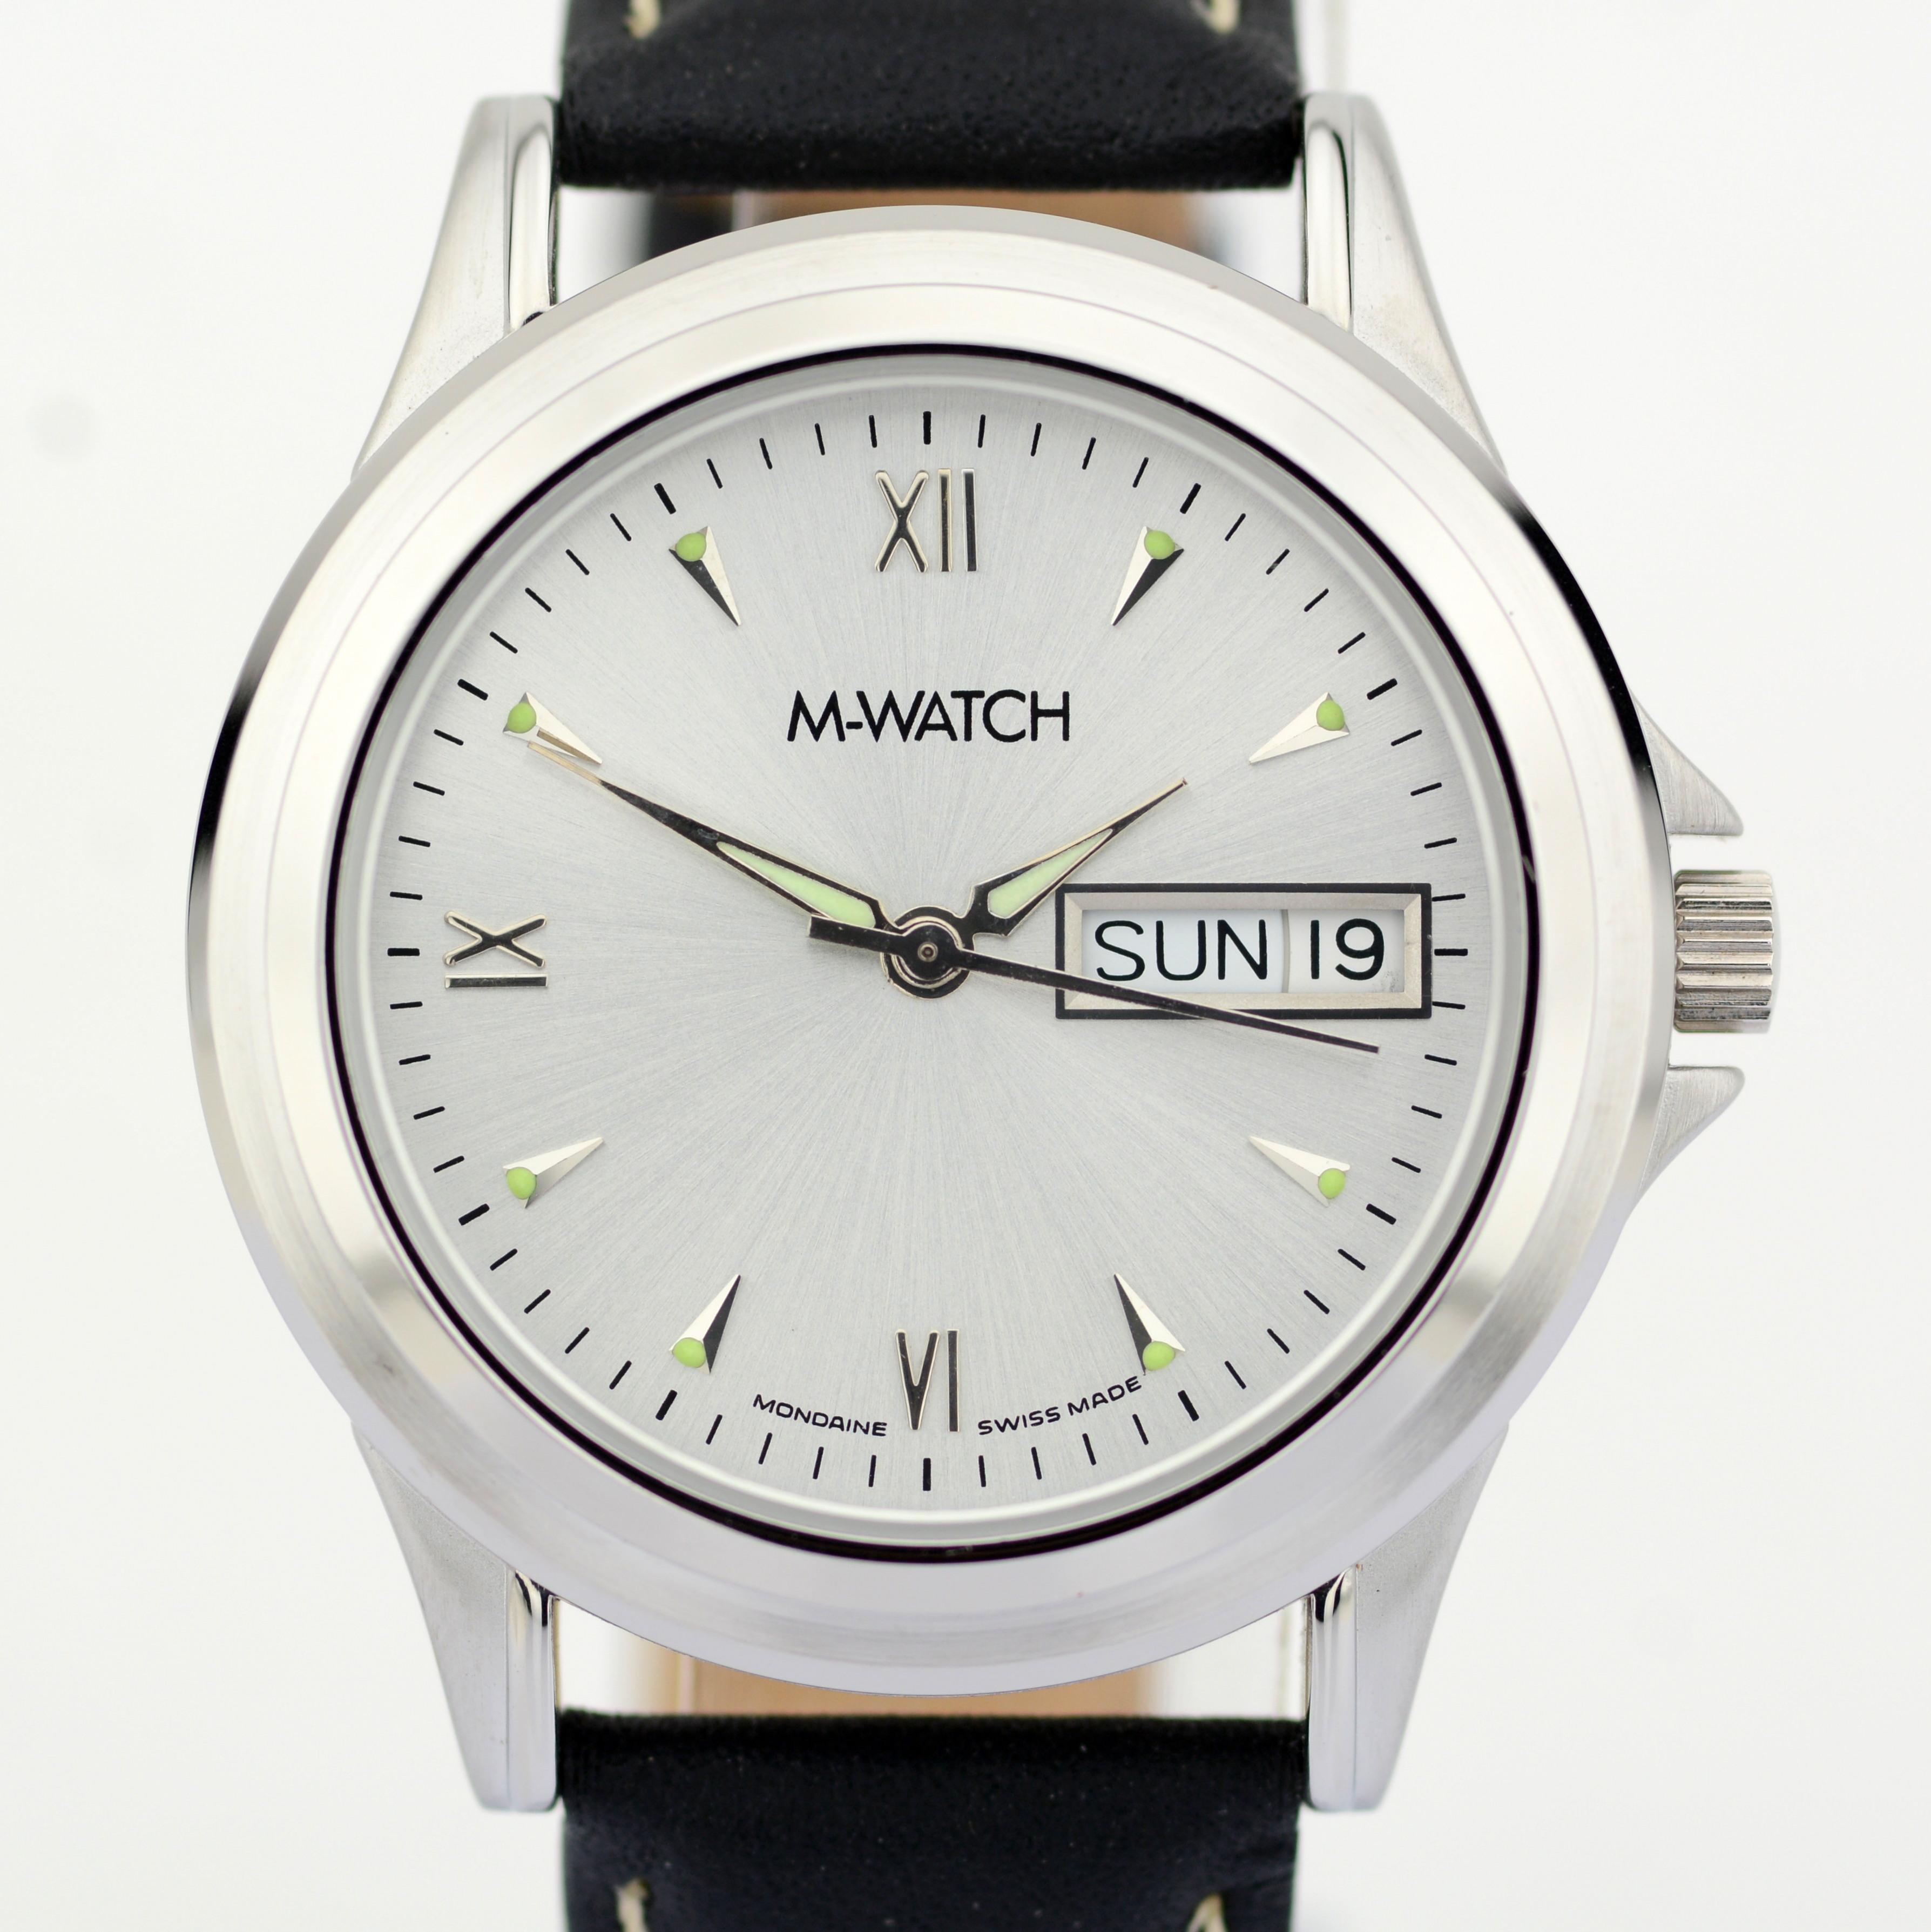 Mondaine / M-Watch Day-Date - (Unworn) Gentlmen's Brass Wrist Watch